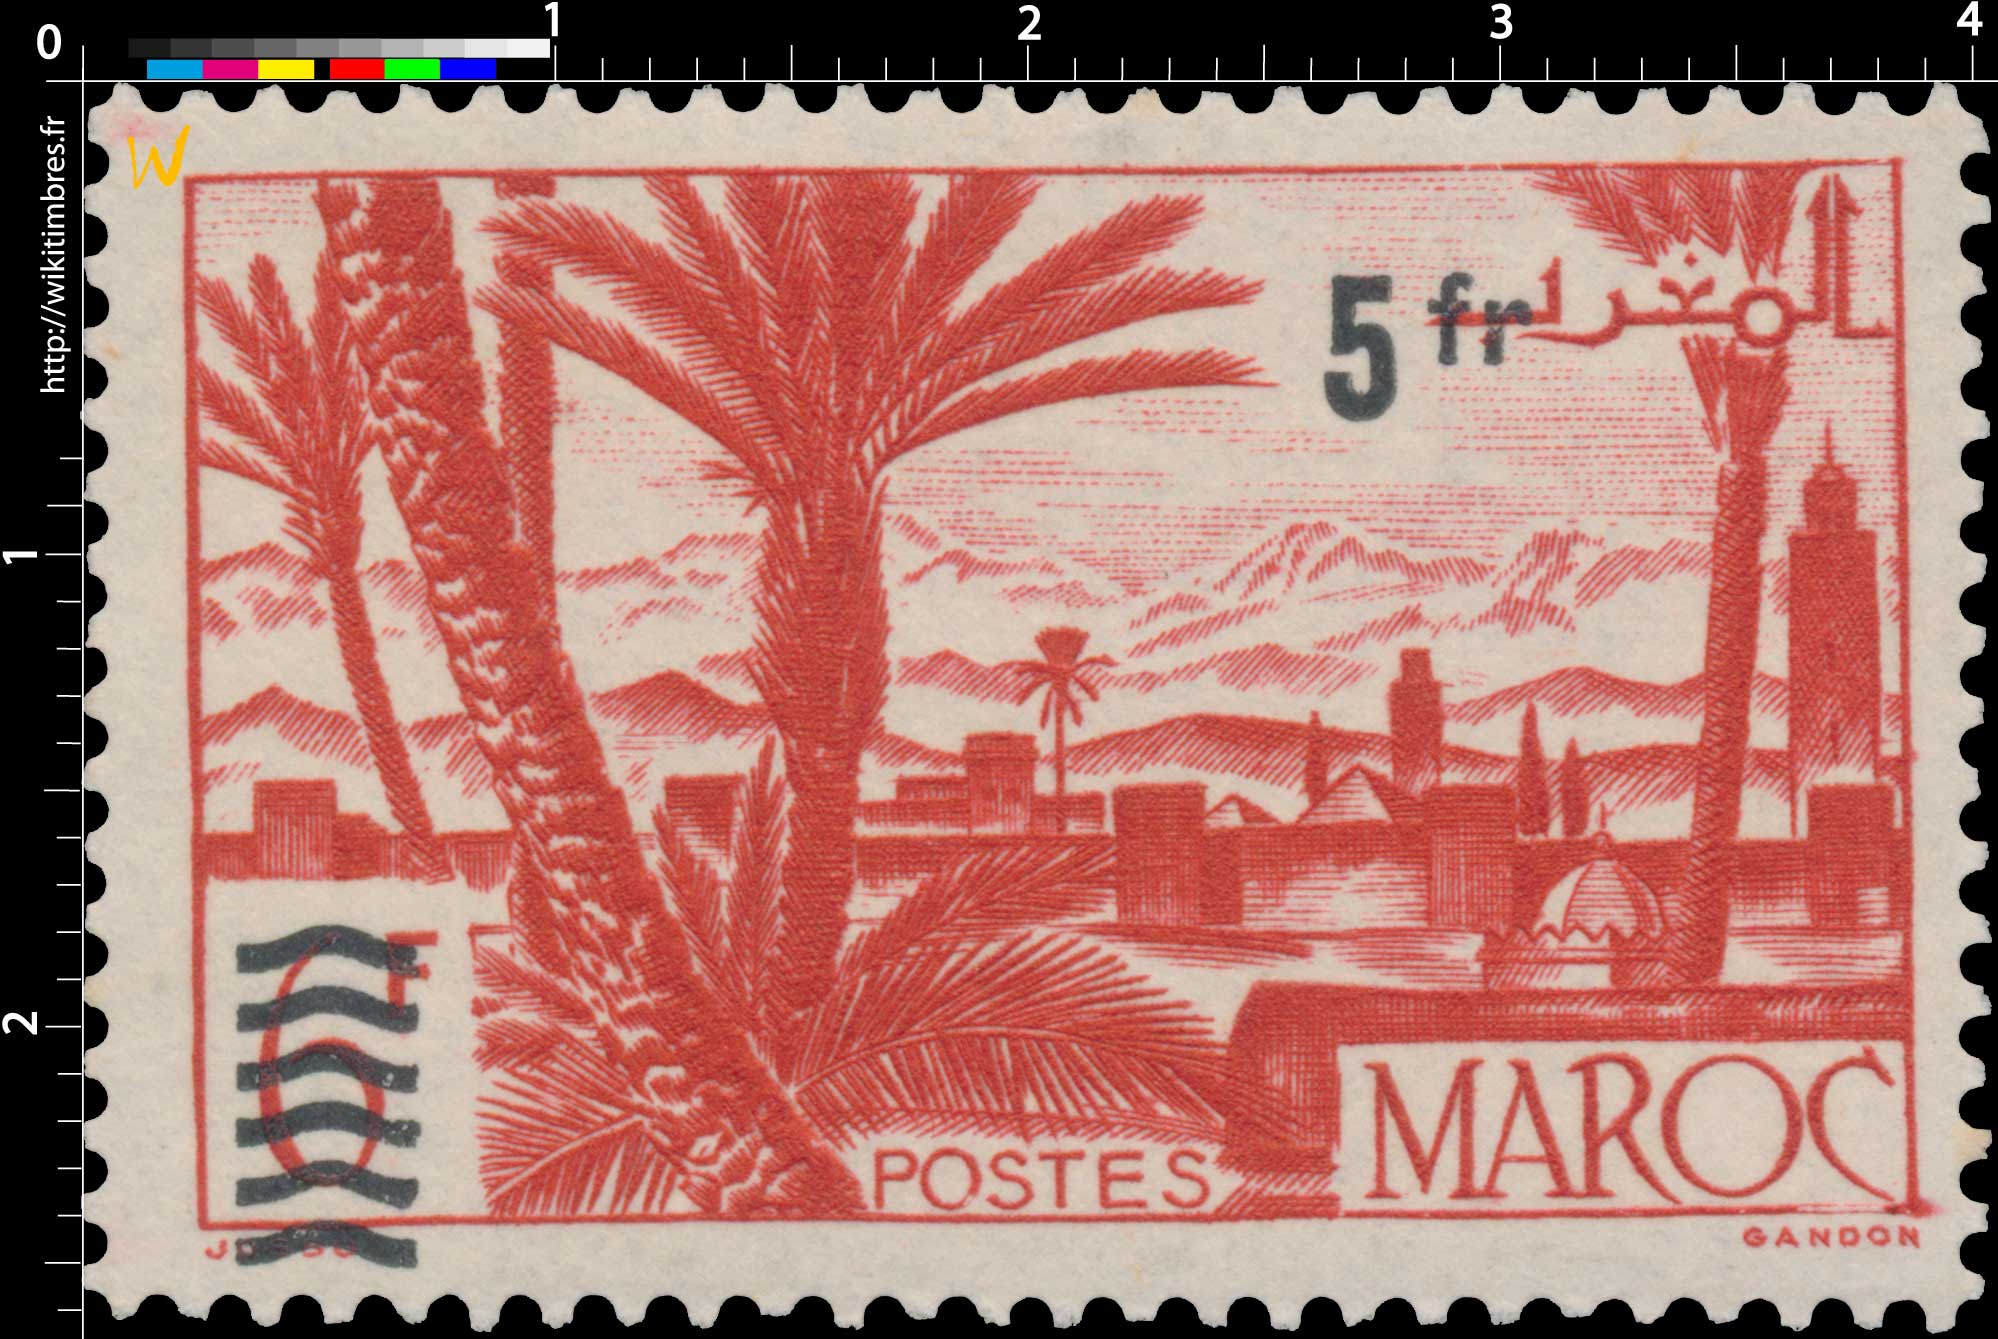 1950 Maroc - Oasis